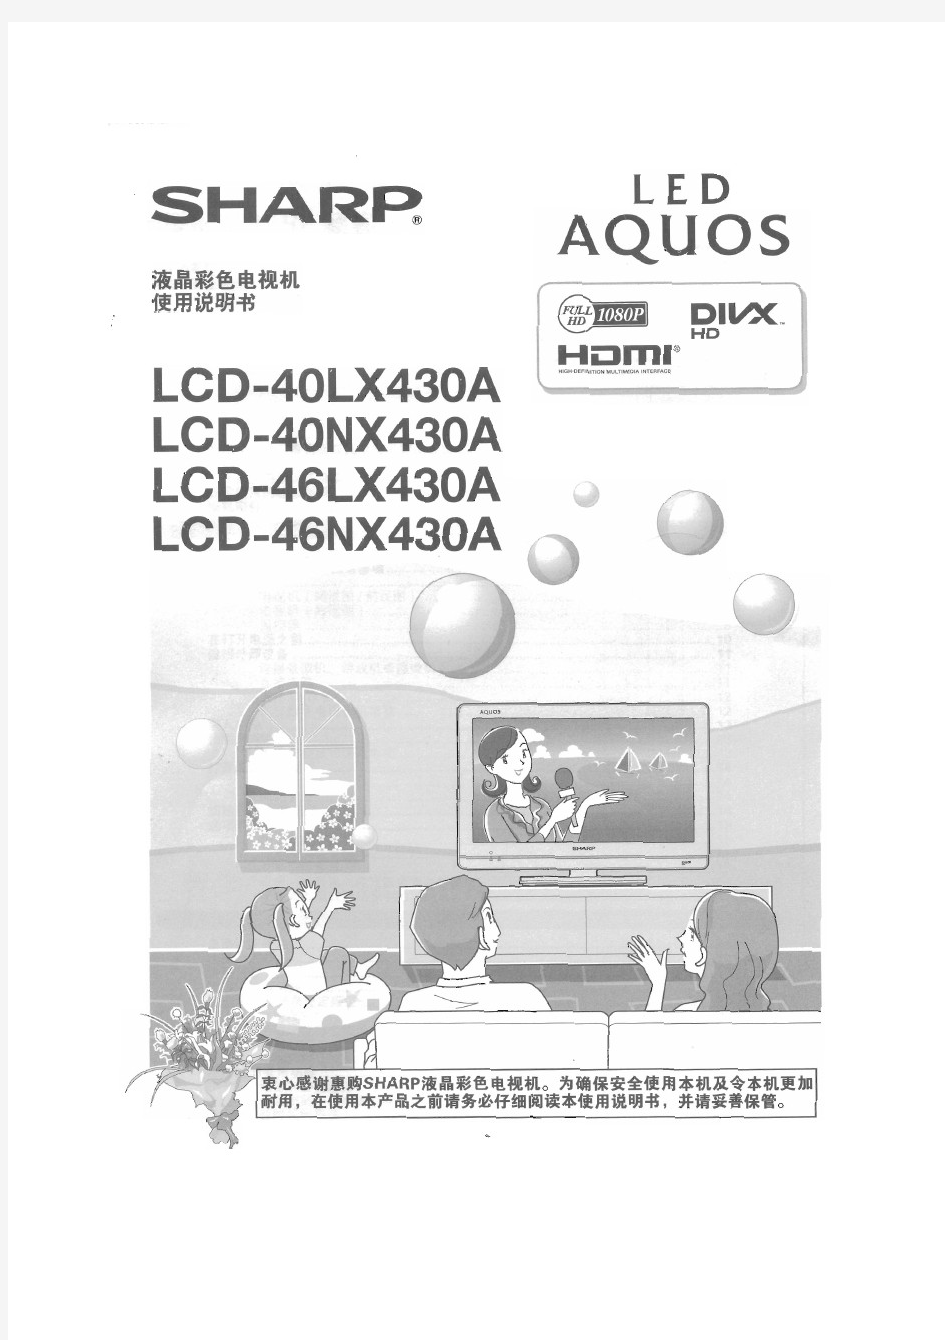 夏普液晶电视LCD-46LX430A使用说明书